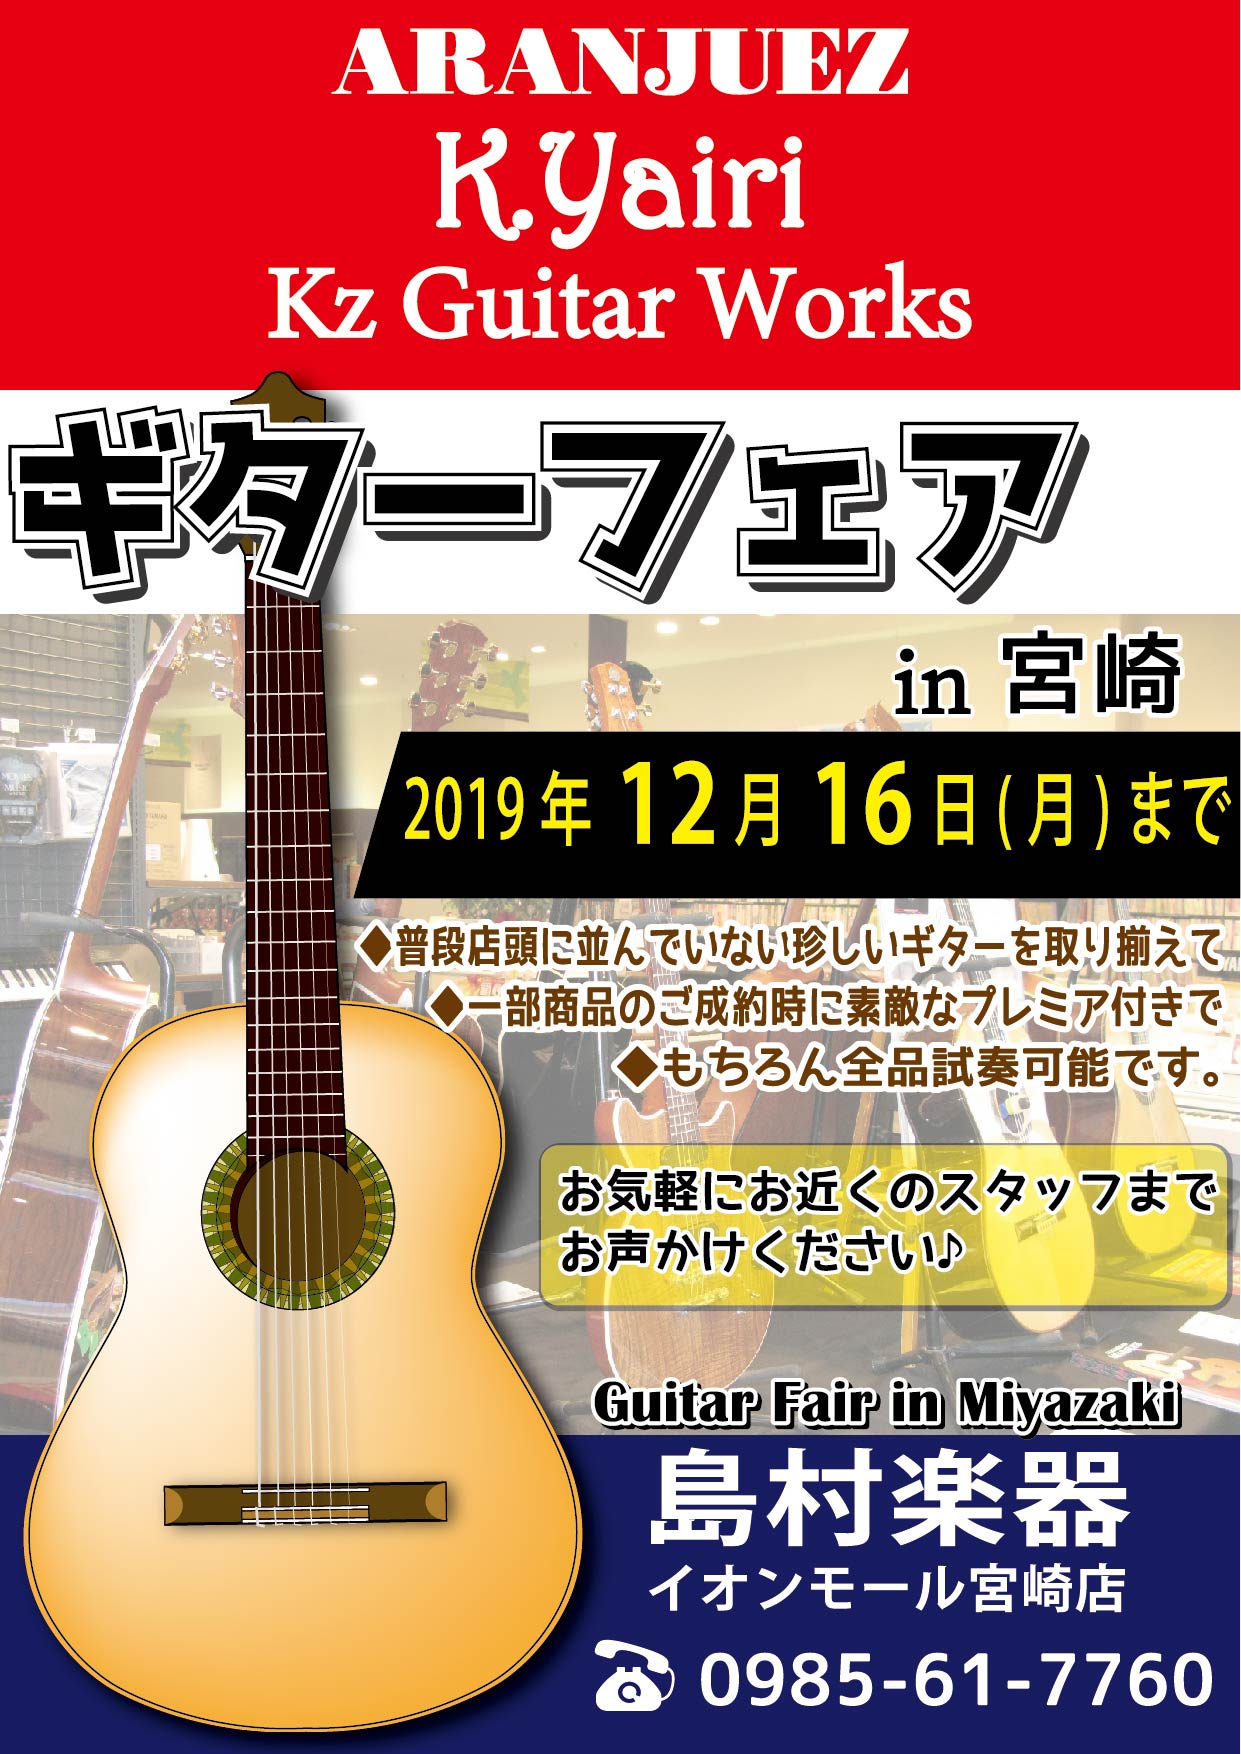 島村楽器 イオンモール宮崎店では、「ギターフェアin宮崎」を今週末に開催いたします。]]店頭に設置された展示場には、Aranjuez(アランフェス) のクラシックギター，K.Yairi（Kヤイリ）のアコースティックギター，Kz Gutar Works（ケイズギターワークス）のエレキギターを展示中です […]